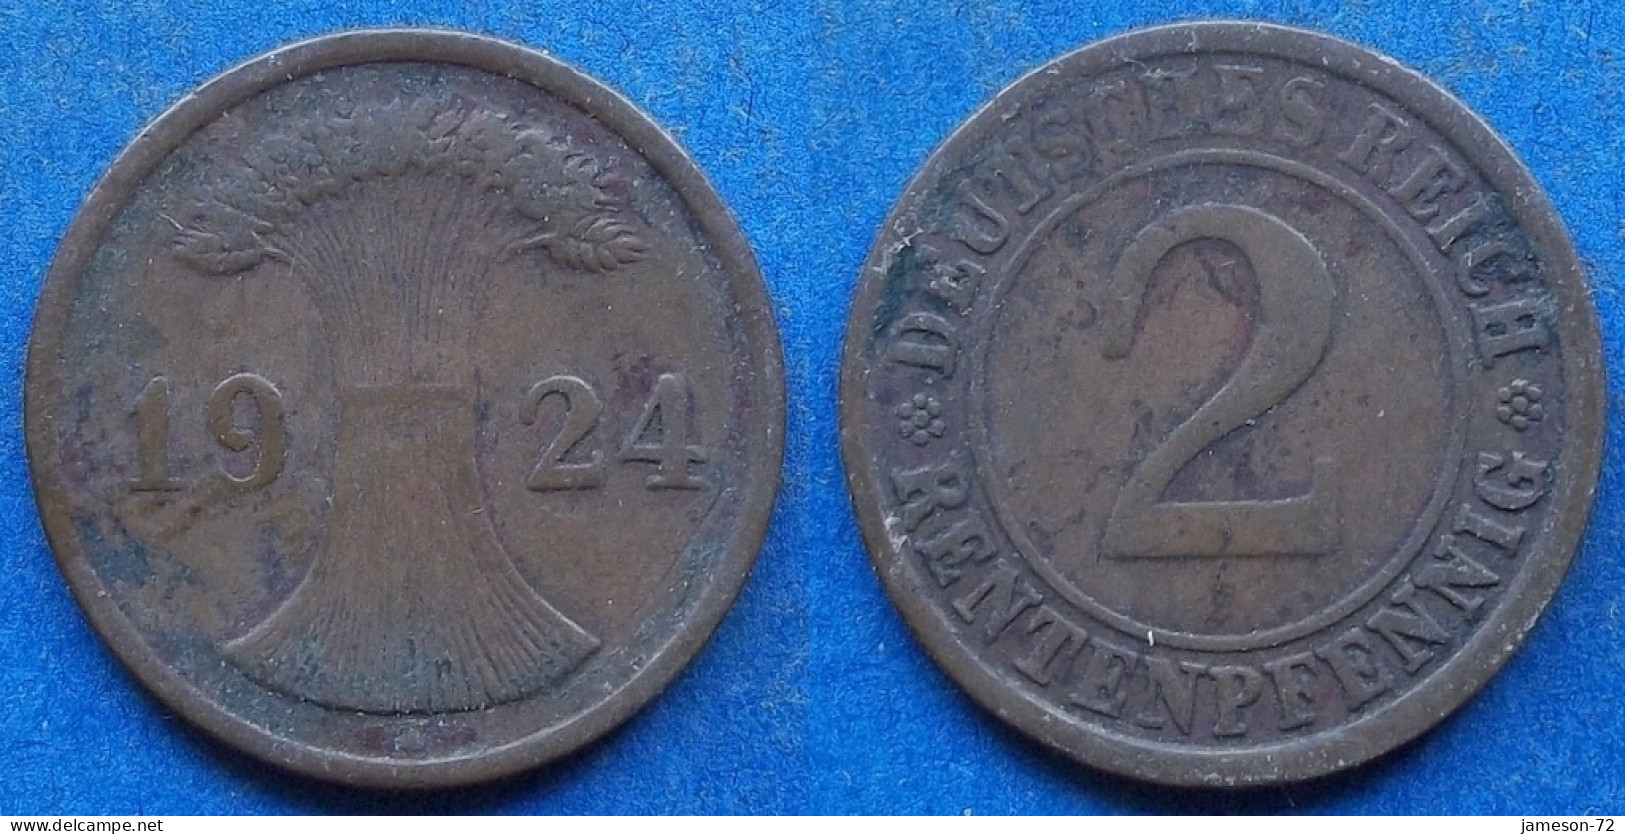 GERMANY - 2 Rentenpfennig 1924 J KM# 31 Weimar Republic Rentenmark Coinage (1923-1929) - Edelweiss Coins - 2 Rentenpfennig & 2 Reichspfennig